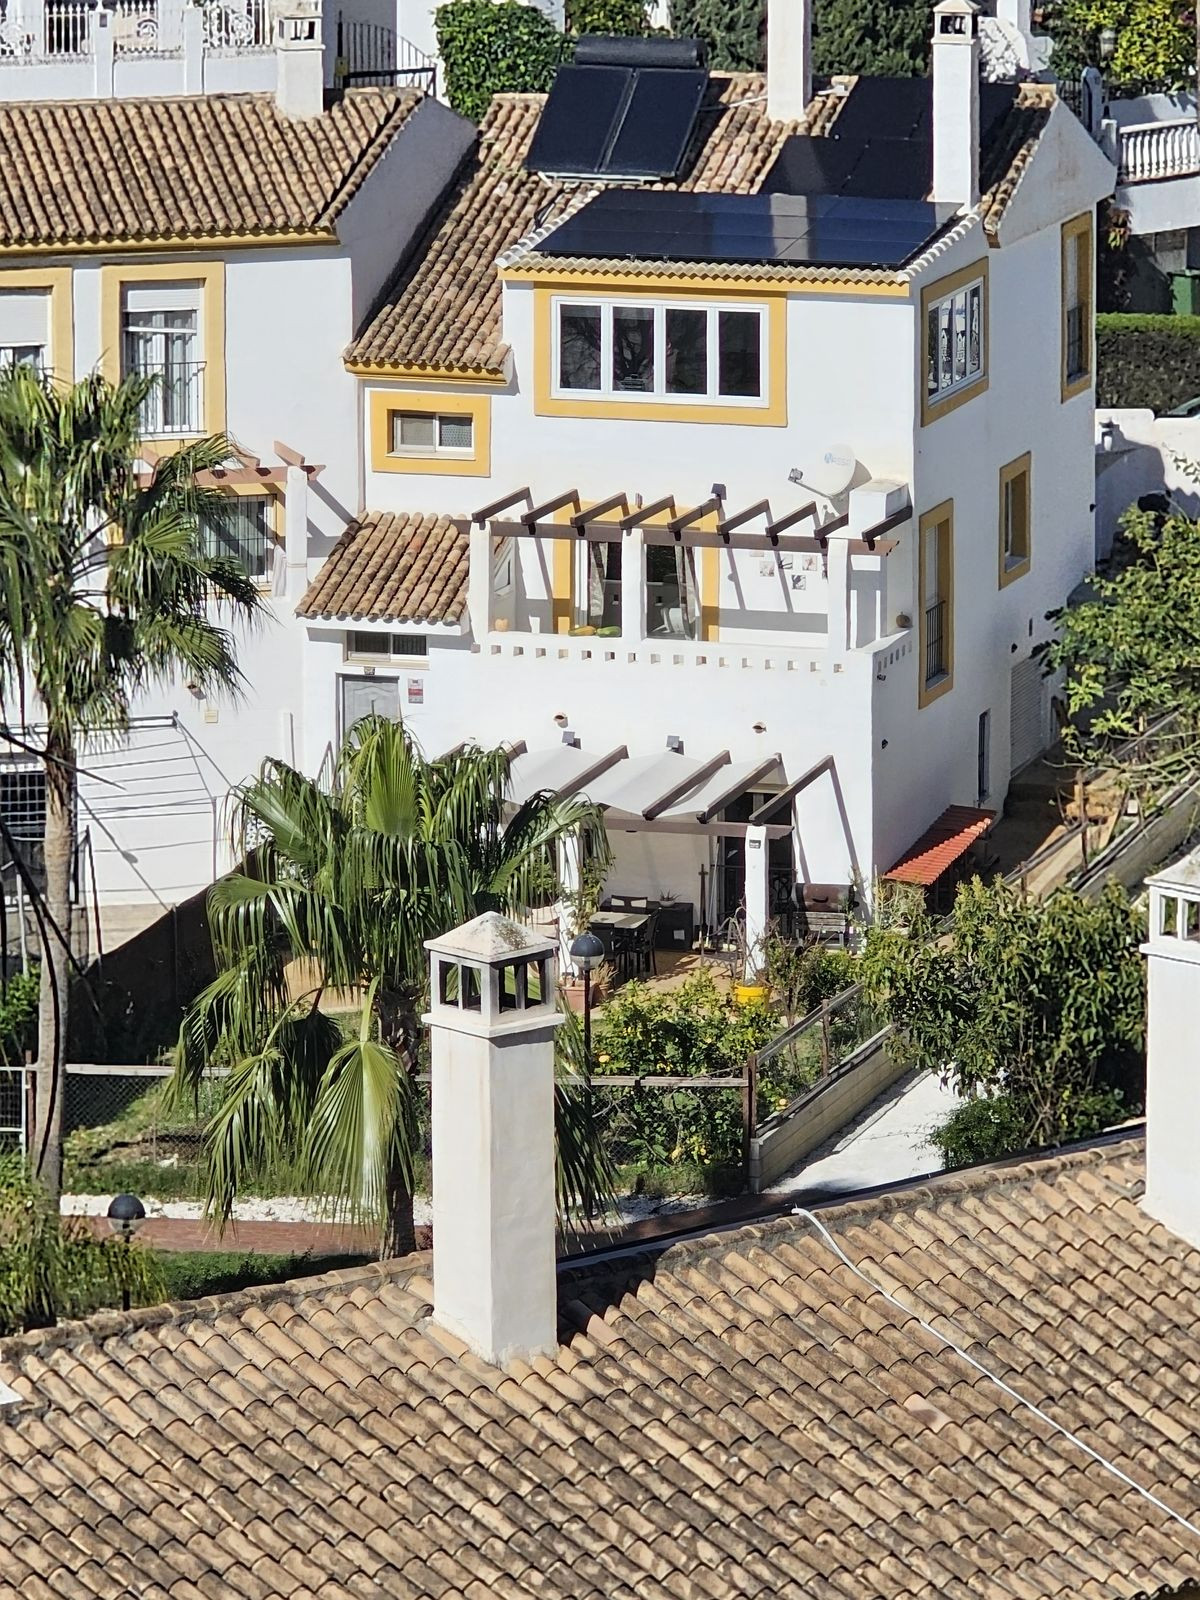 						Villa  Pareada
													en venta 
																			 en Riviera del Sol
					